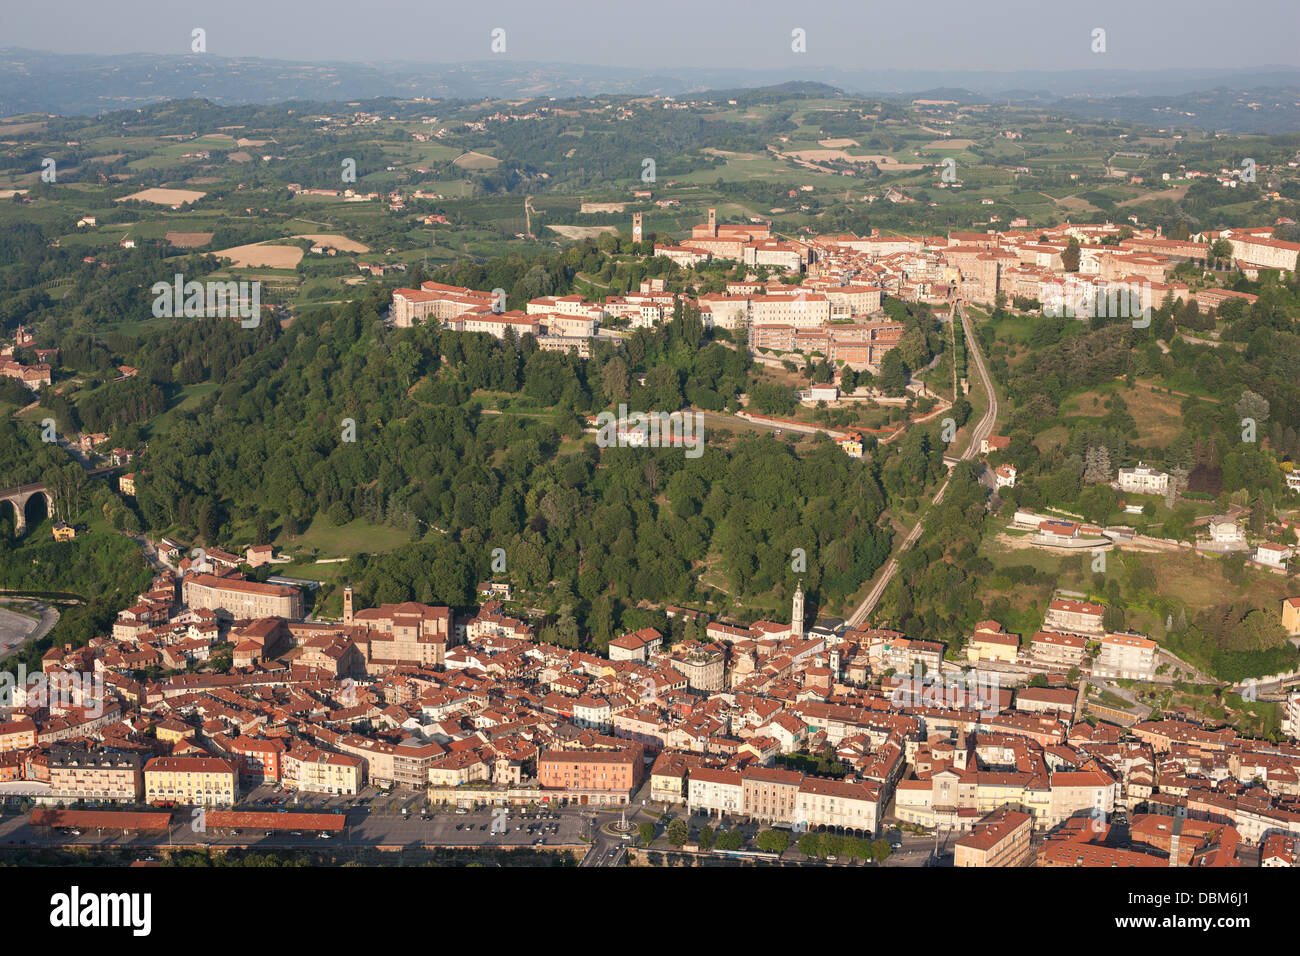 VUE AÉRIENNE.Ville médiévale au sommet d'une colline surplombant la ville la plus récente à l'pied.Mondovi, province de Cuneo, Piémont, Italie. Banque D'Images